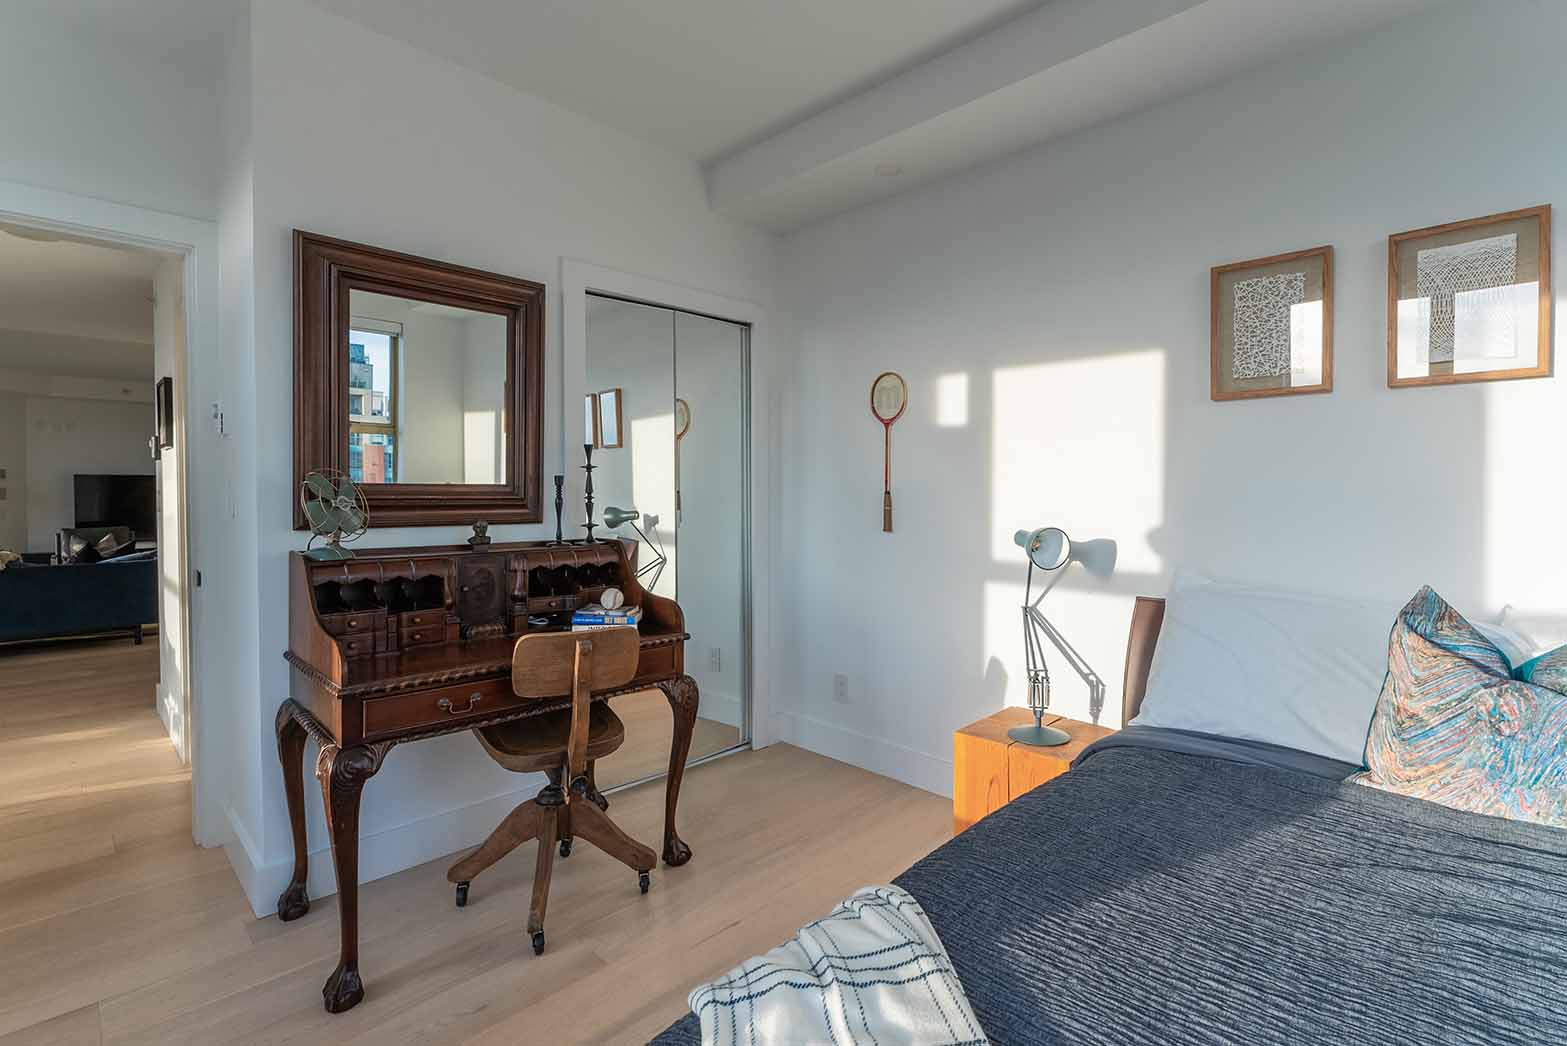 bedroom-renovation-vancouver-laminated-floor-mirror-closet-doors